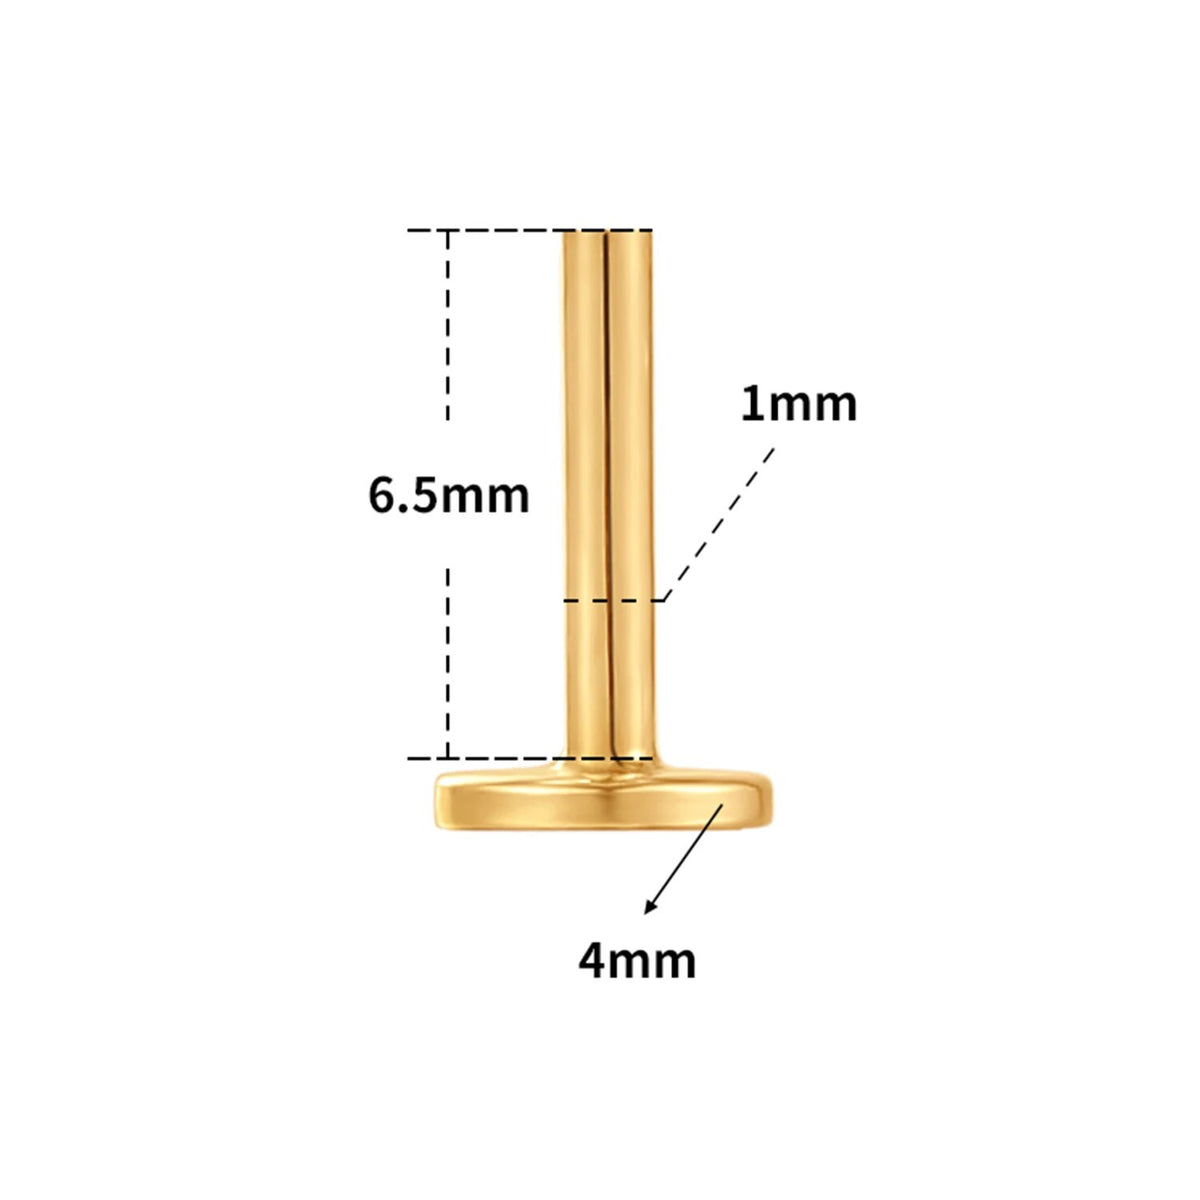 Helix-Ohrring aus 14-karätigem Gold mit Ketten, Muschelohrringe, Ohrläppchen-Piercing-Schmuck, Labret-Ohrstecker